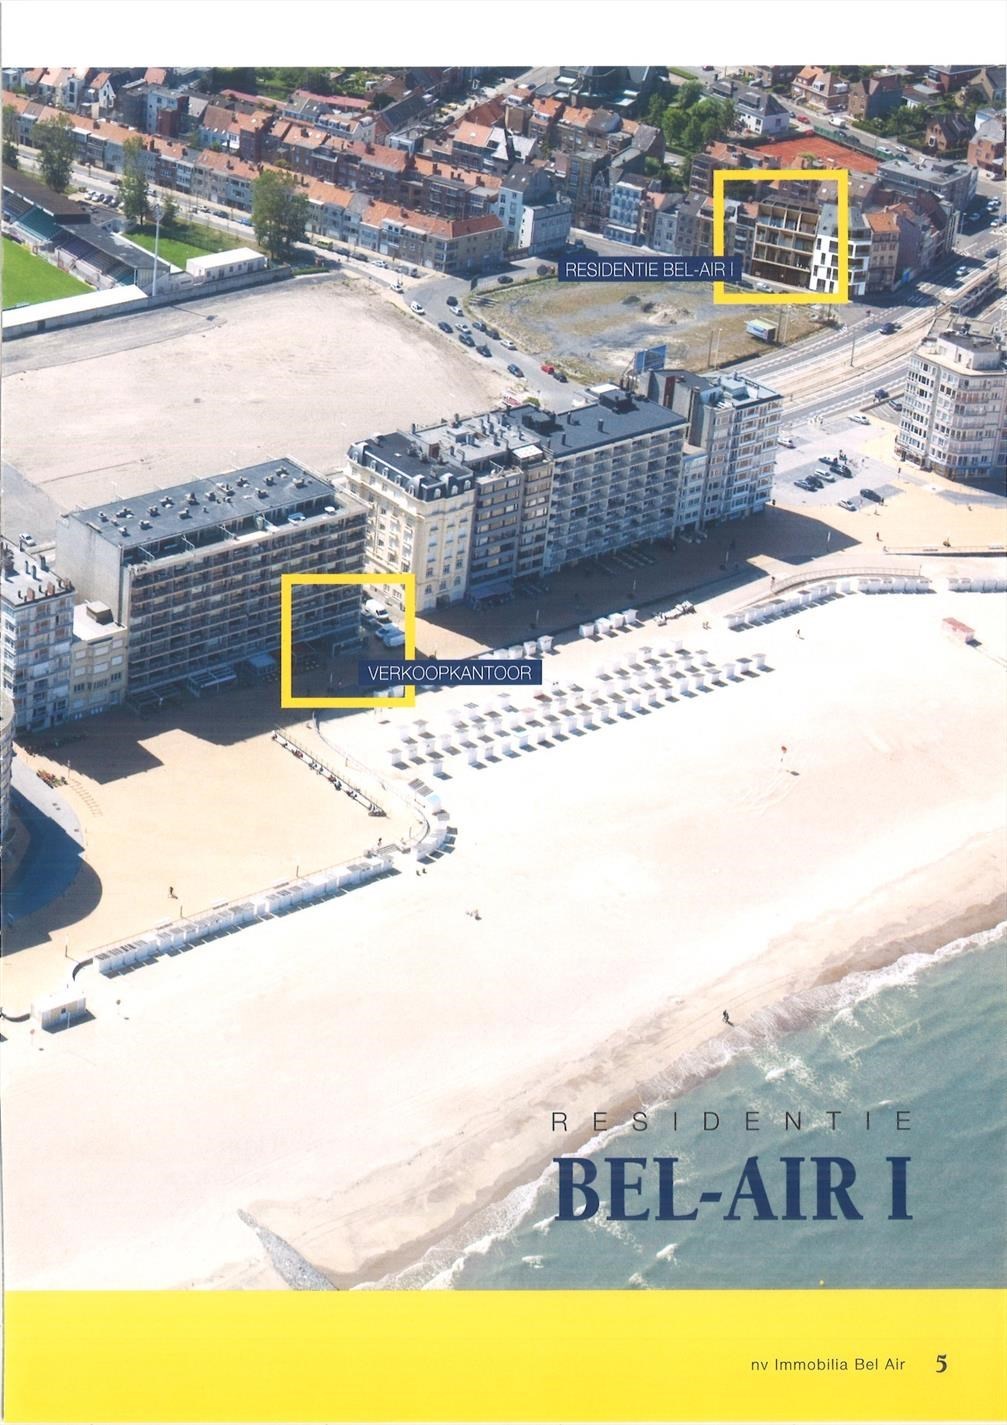 Nieuwbouwproject Bel  Air   I te   Oostende  dicht bij het Strand (lateraal zeezicht).     Terrasresidentie  gekenmerkt door  z'n mooie architectuur.     3de  v foto 5